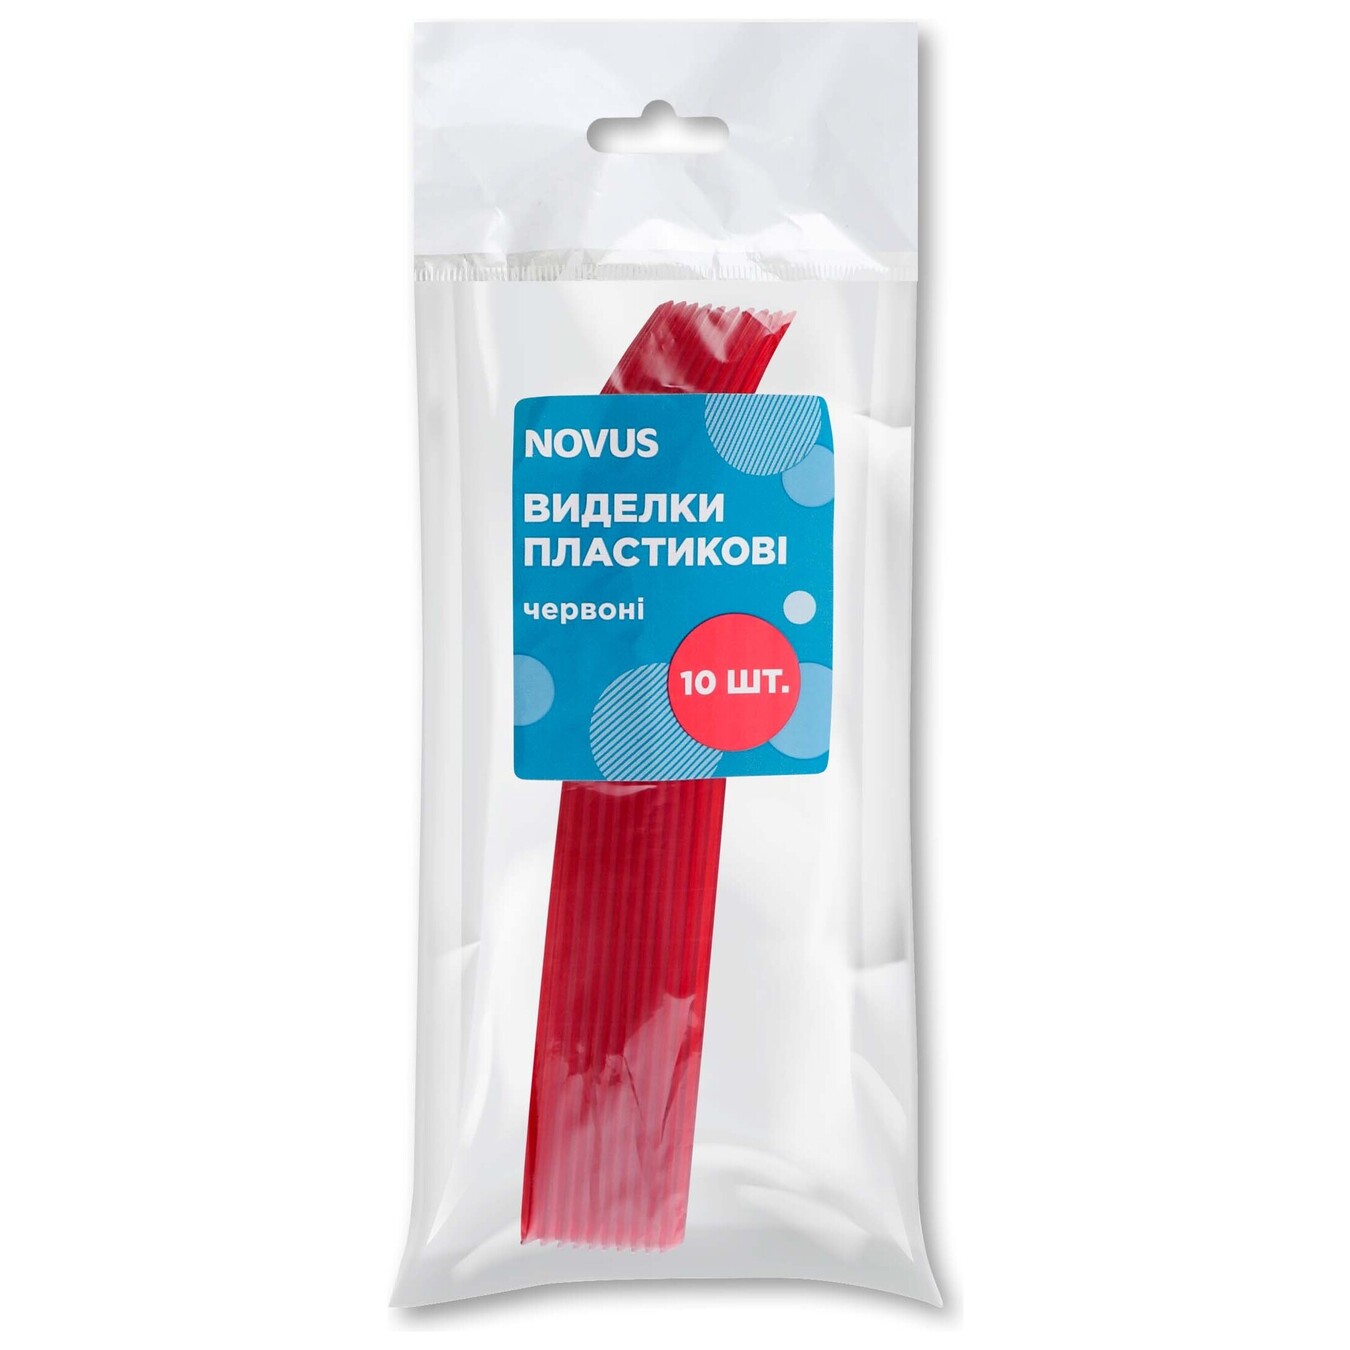 Виделки Novus пластикові червоні 10шт